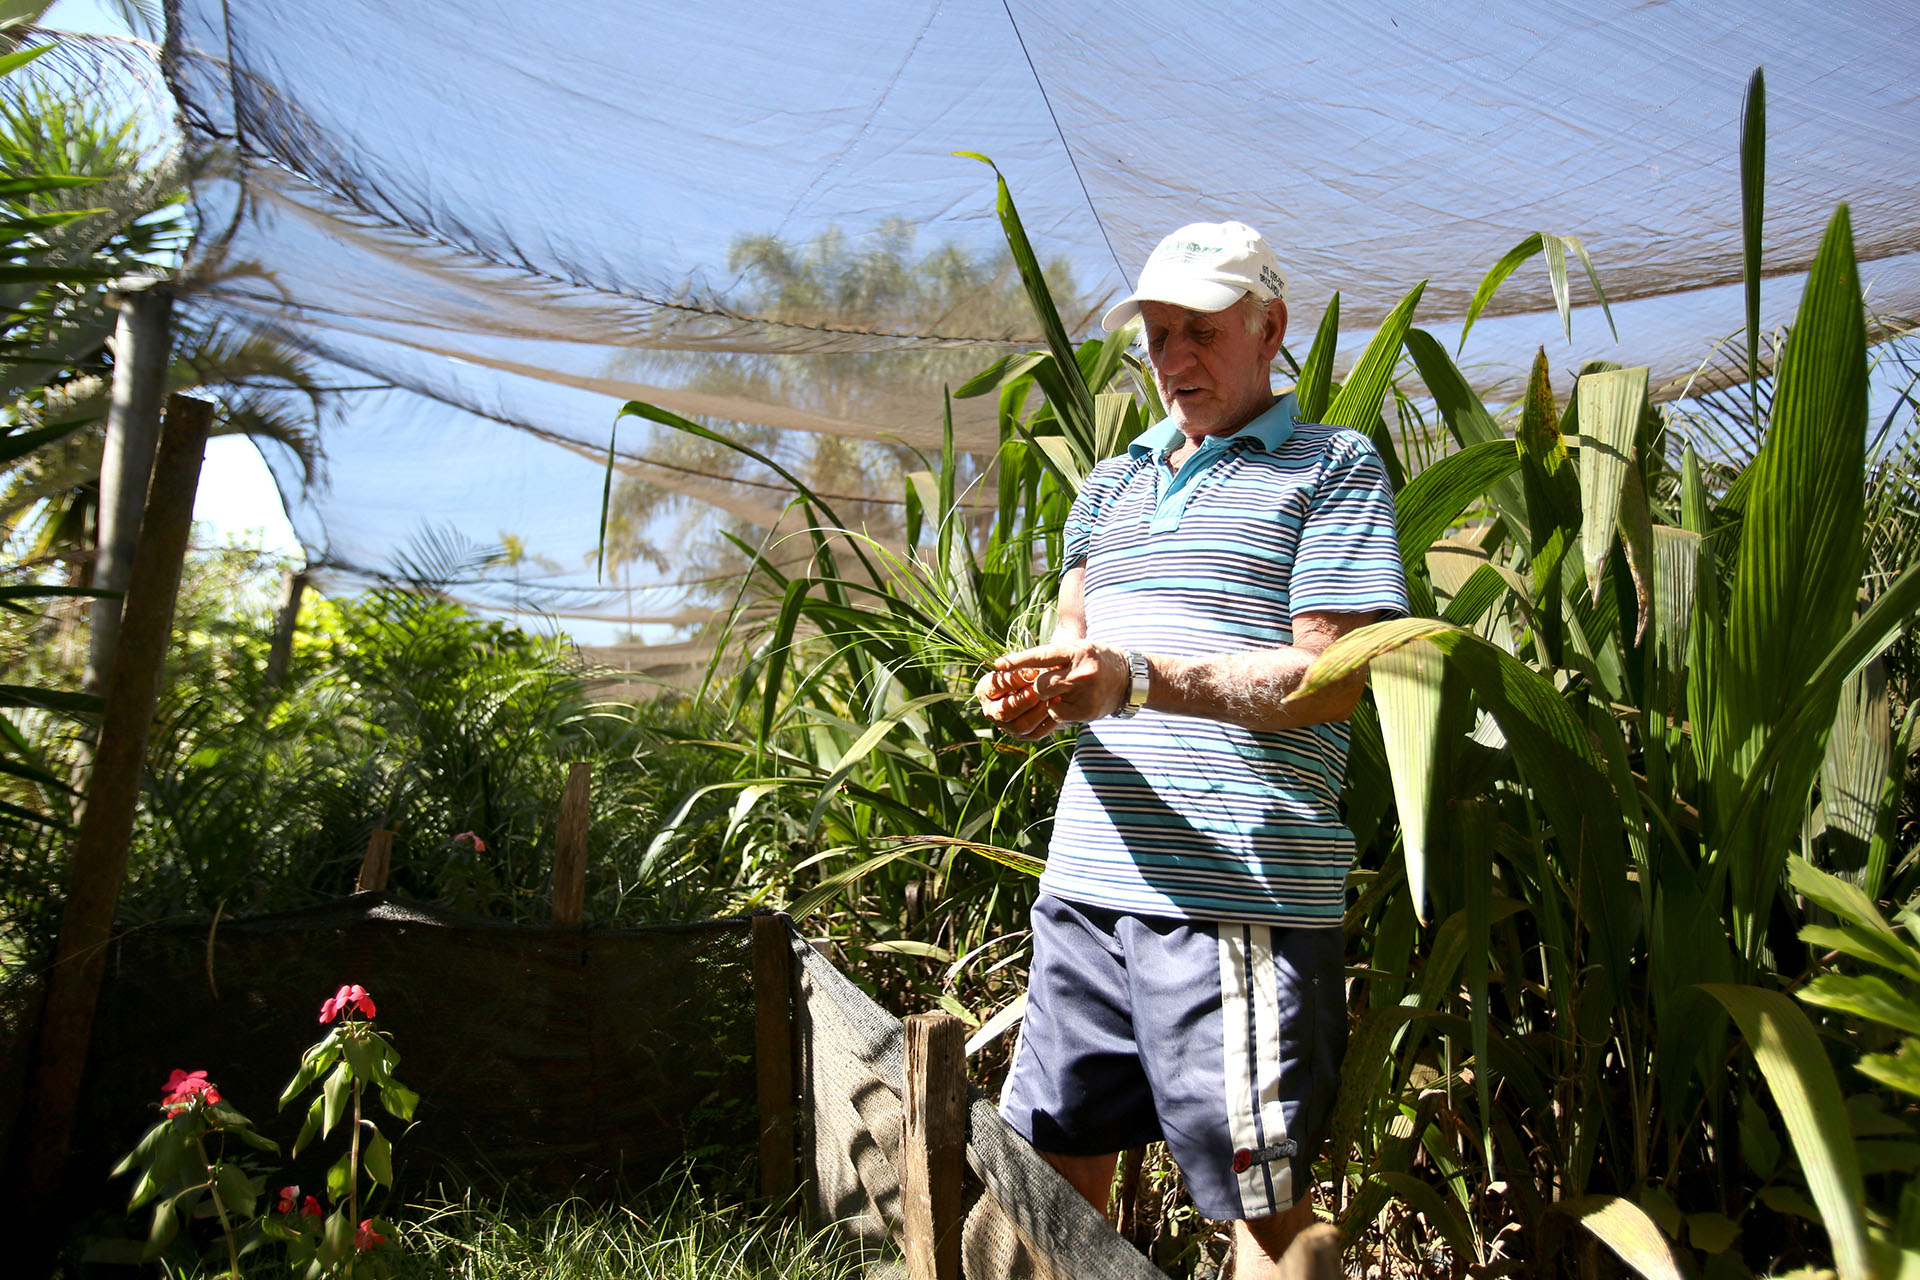 Os visitantes da Chácara Flora Brasília recebem do proprietário, Custódio Fernandes da Silva, de 70 anos, informações sobre a semeadura e os cuidados básicos com a planta ornamental pata-de-elefante.